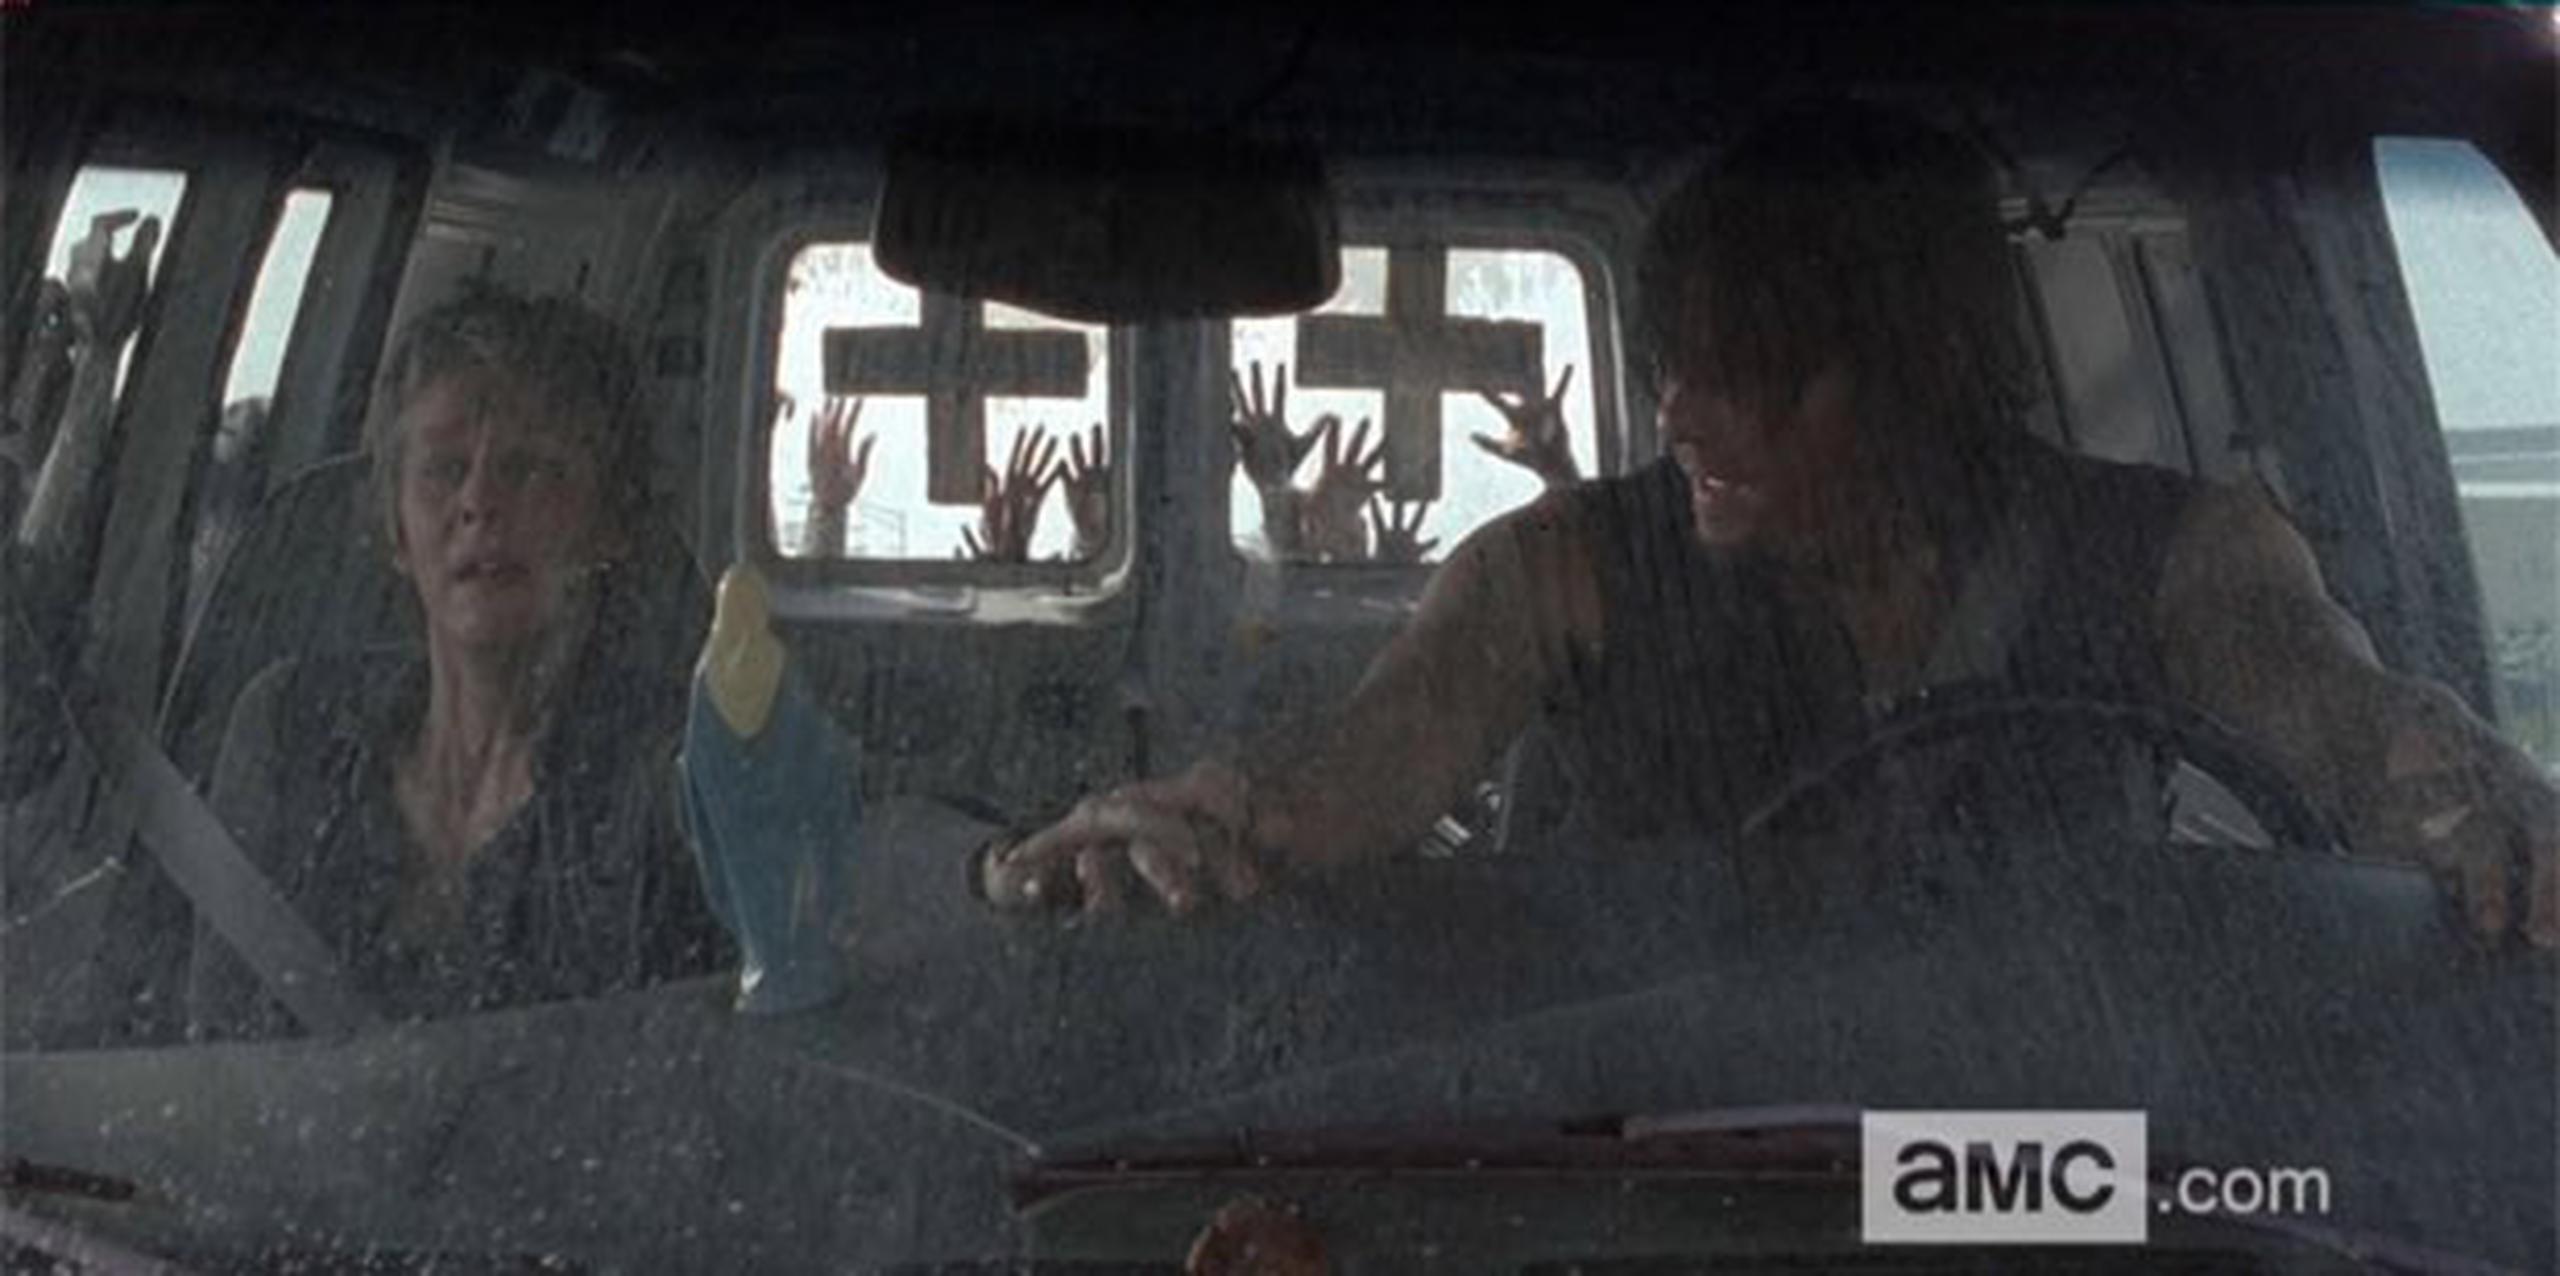 Llega el momento climático cuando en un gesto de ternura "Carol" le toca la mano a "Daryl" ante lo que posiblemente sería su muerte.(amc.com)